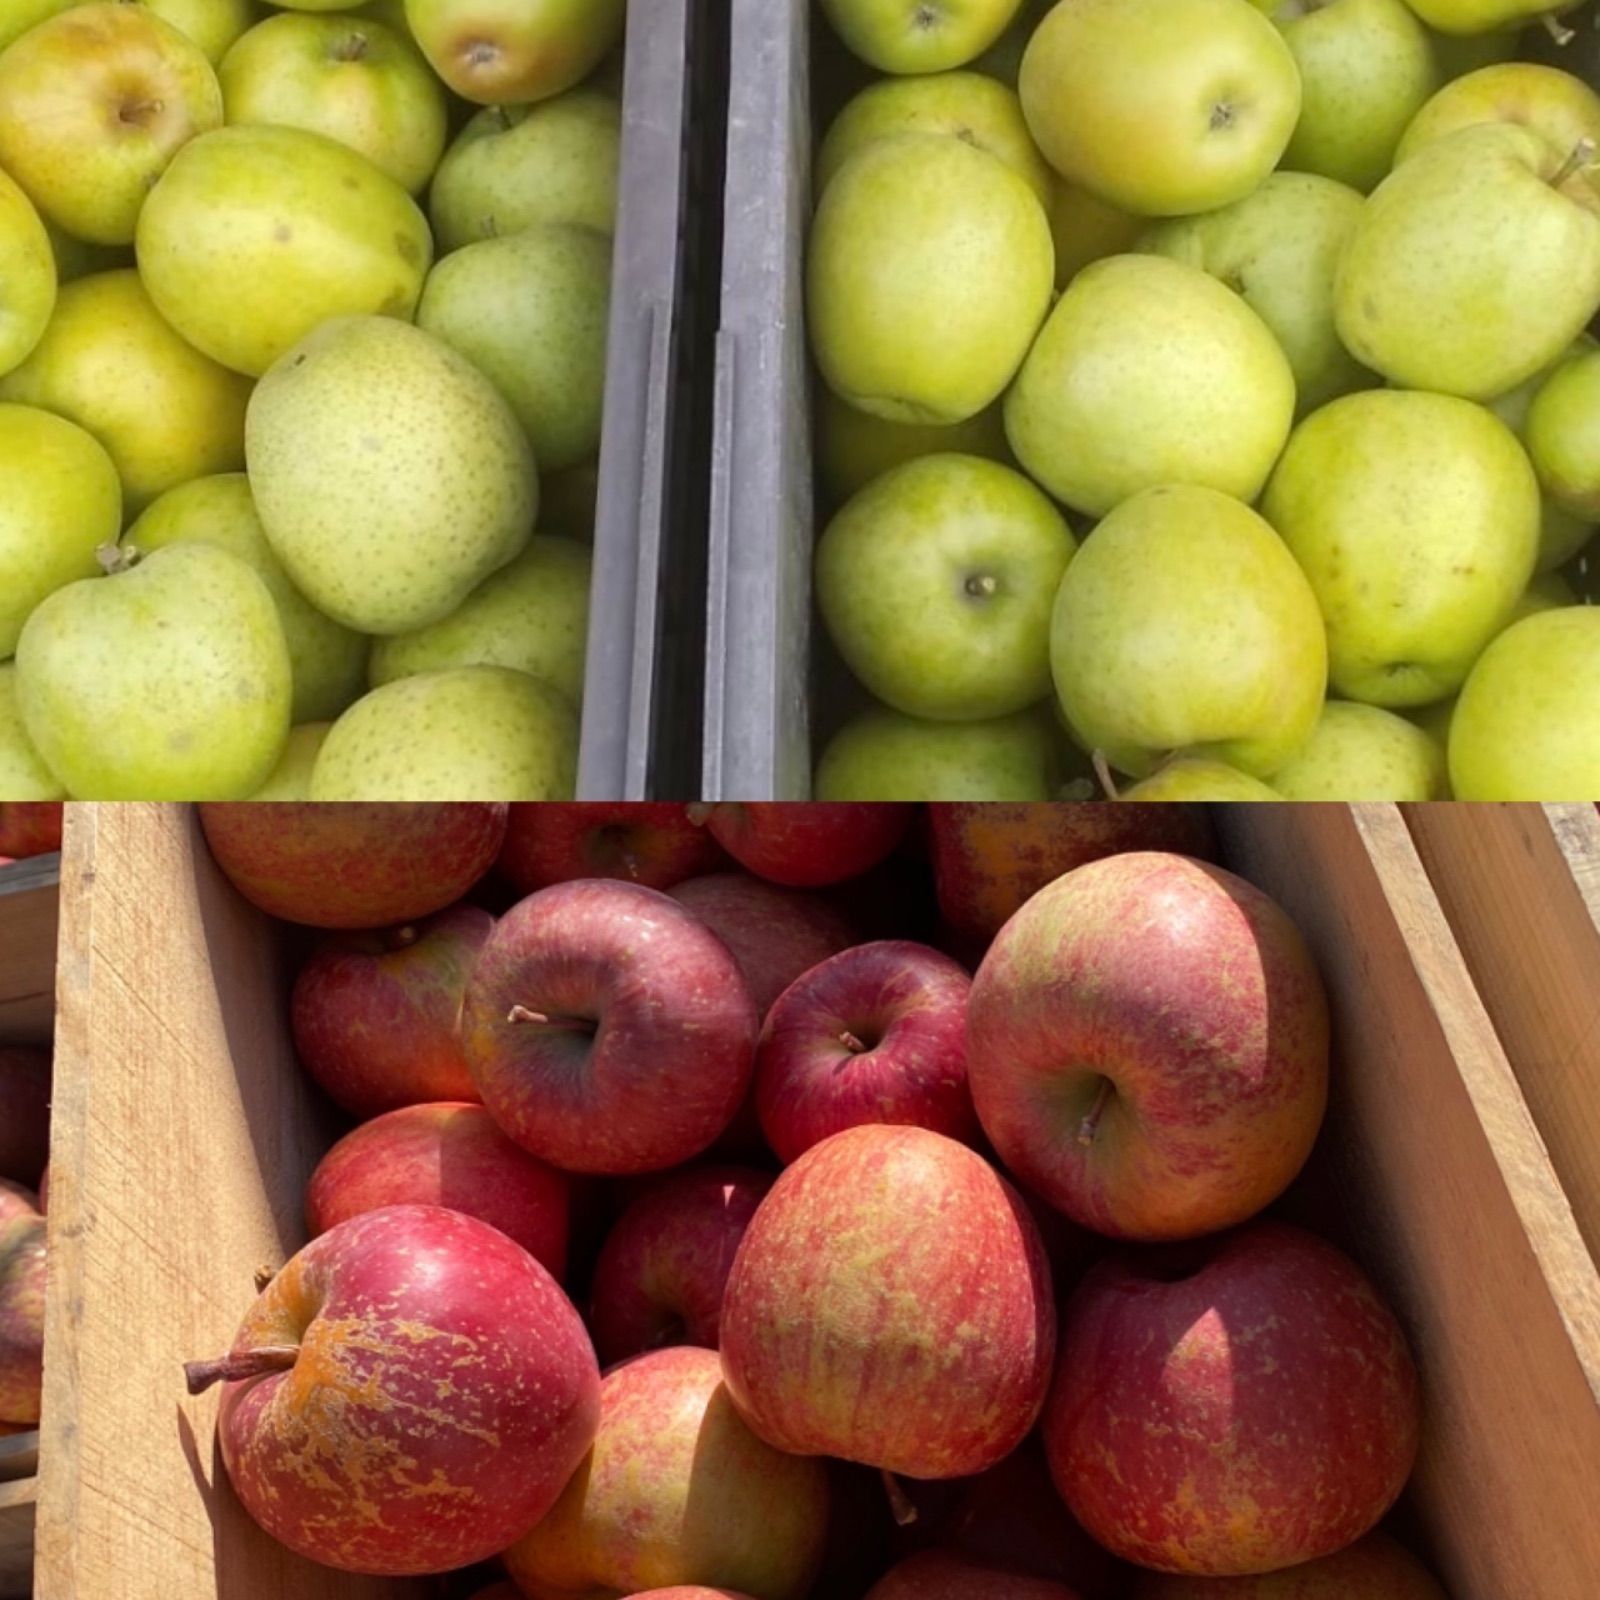 青森県産 王林 りんご 家庭用 10kg 農家直送 送料無料 リンゴ サンふじ